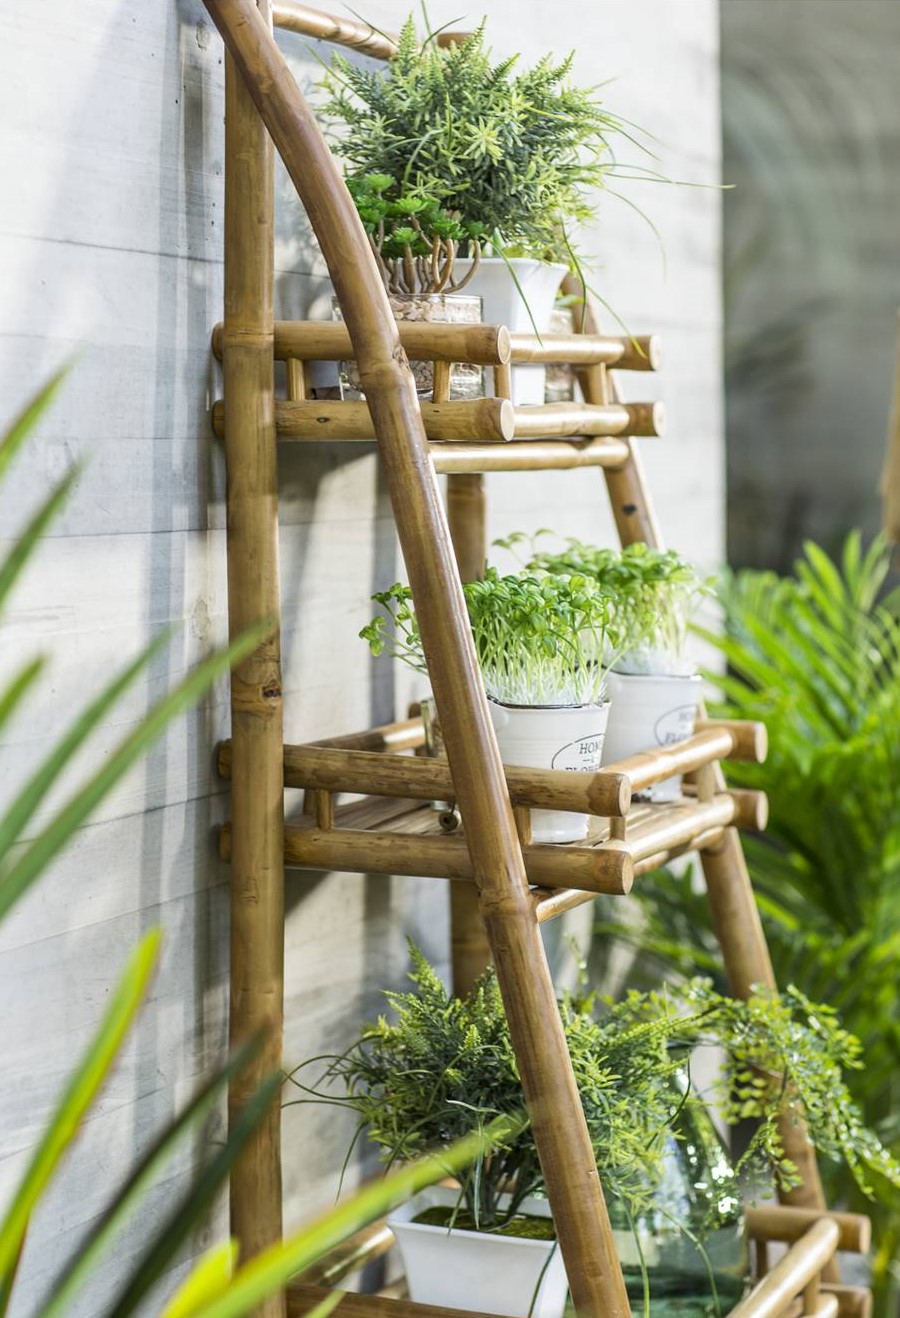 Detalle de una repisa de tres niveles, de bambú en una terraza. En ella hay varias macetas blancas con hierbas y plantas, La repisa está apoyada en un muro gris.